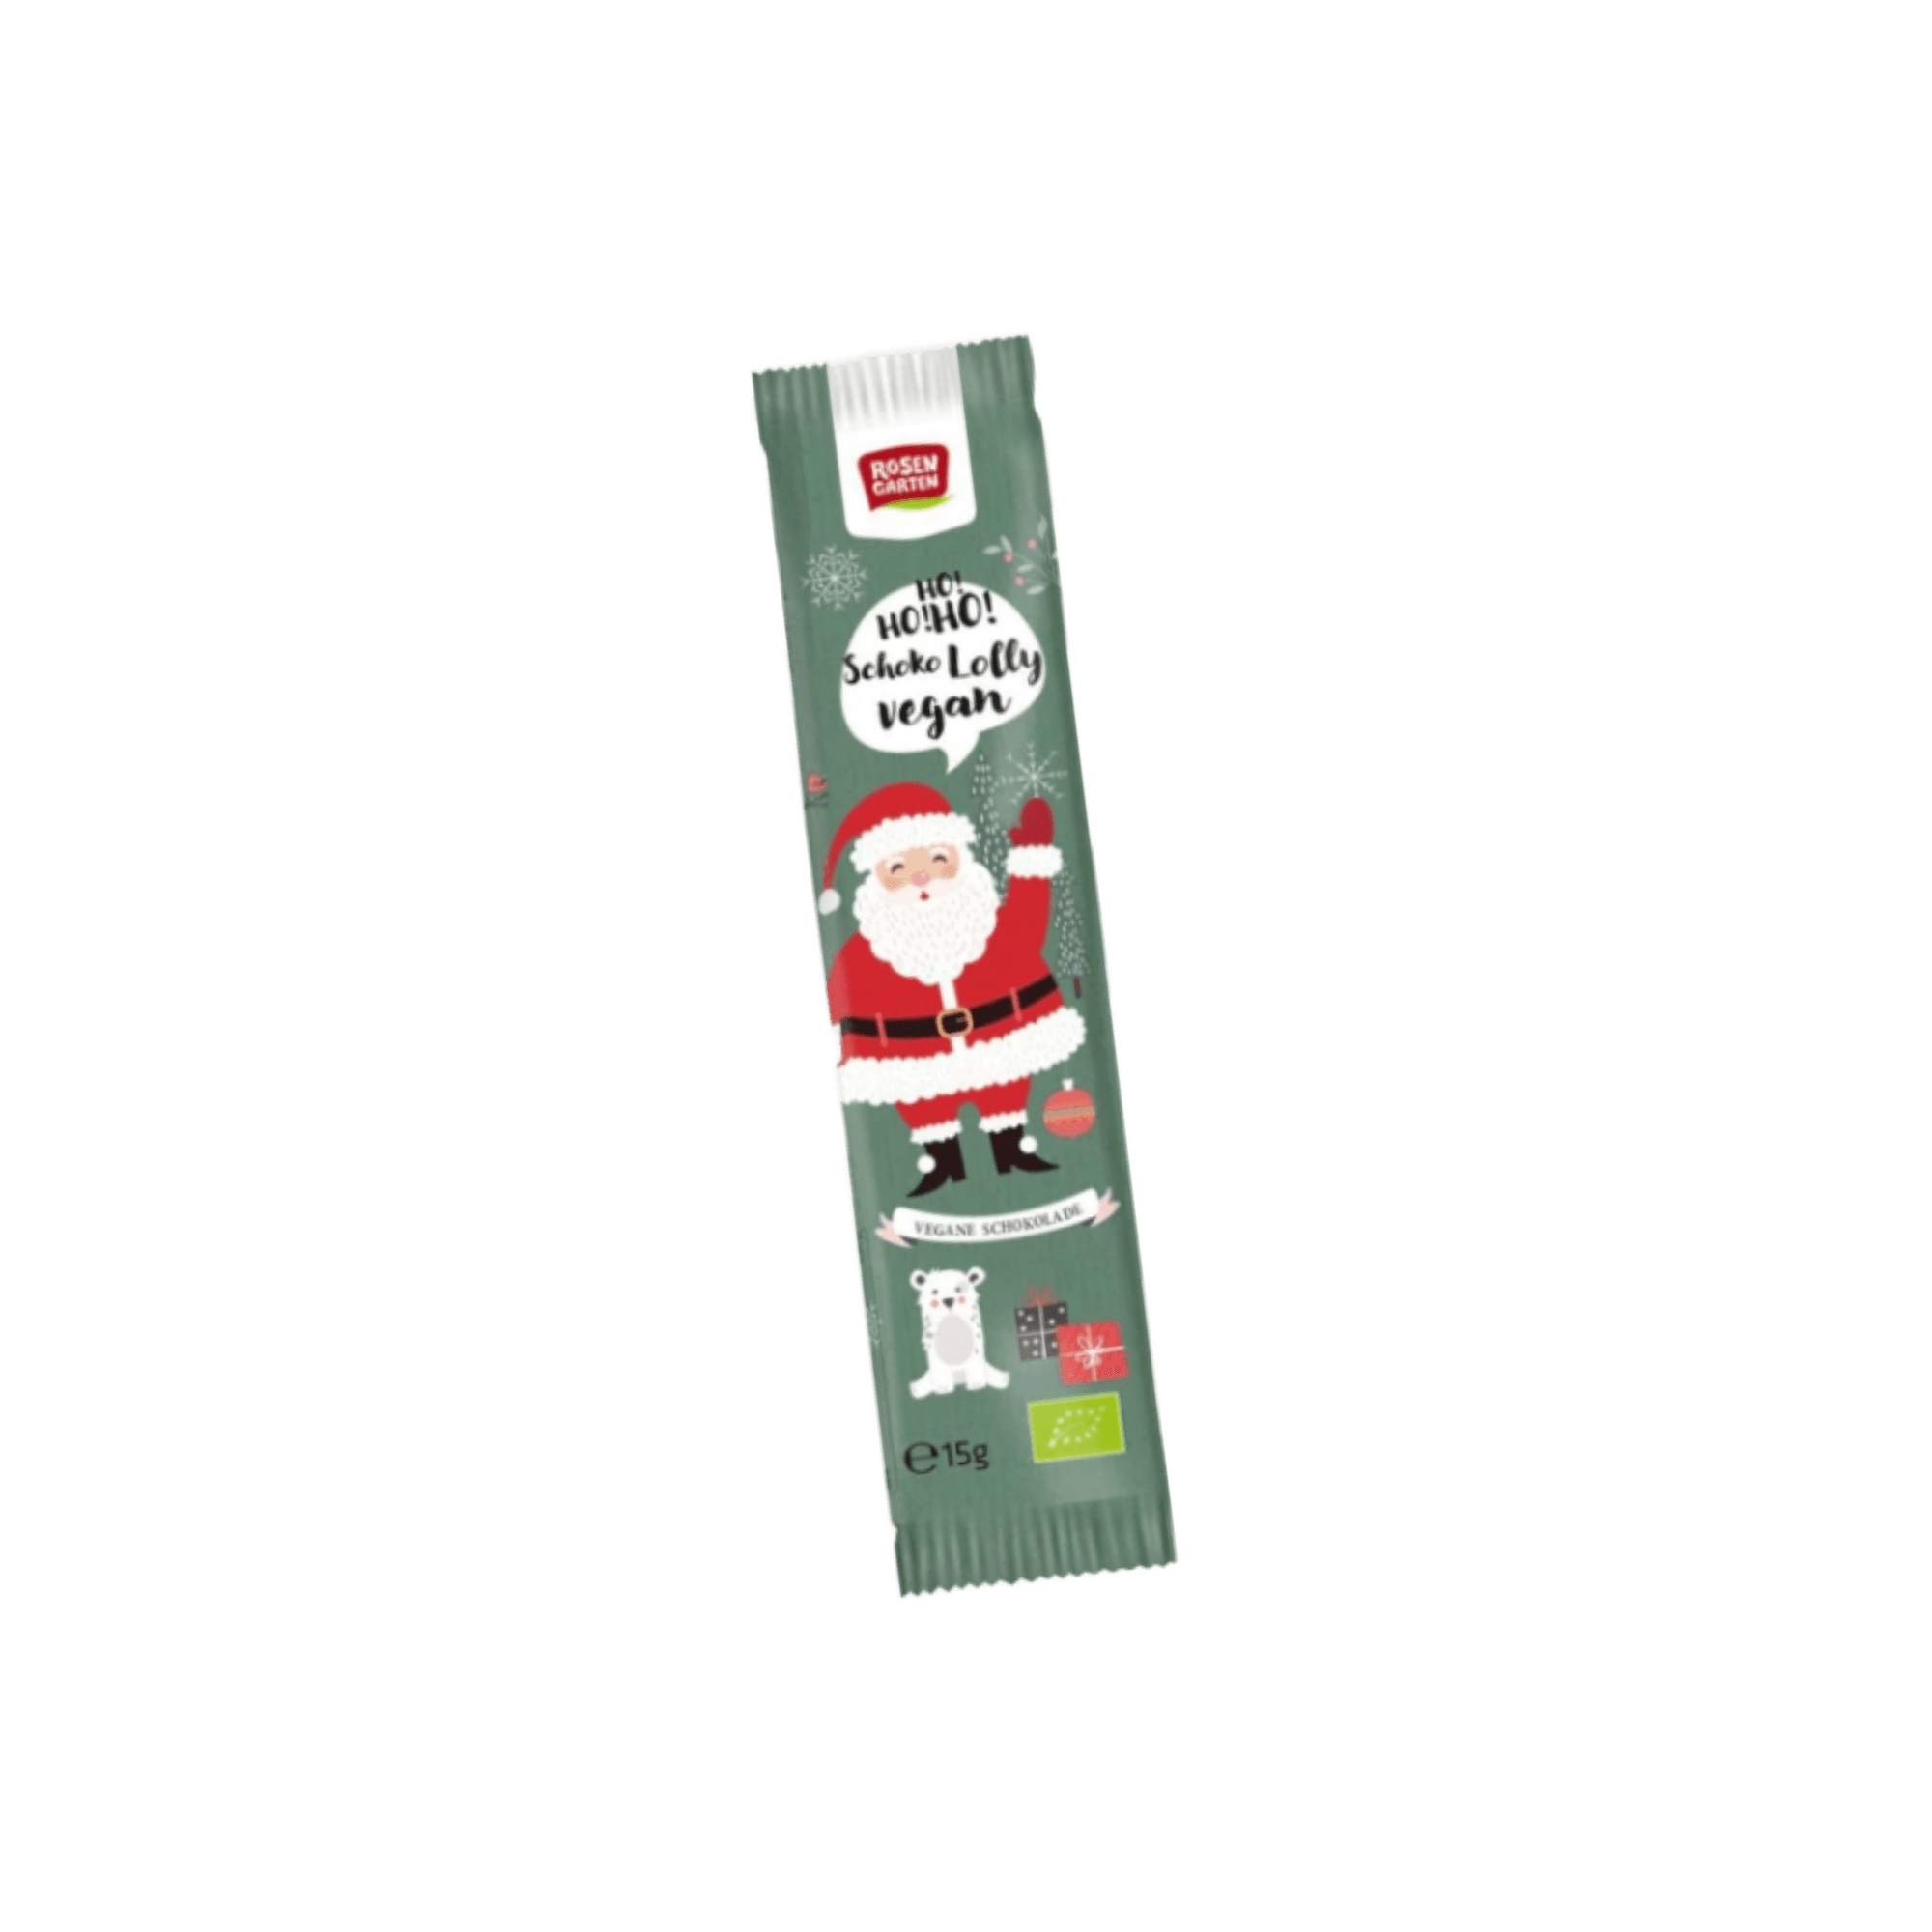 Coole Goodies: Weihnachtsmütze, Schoko-Lolly und Postkarte